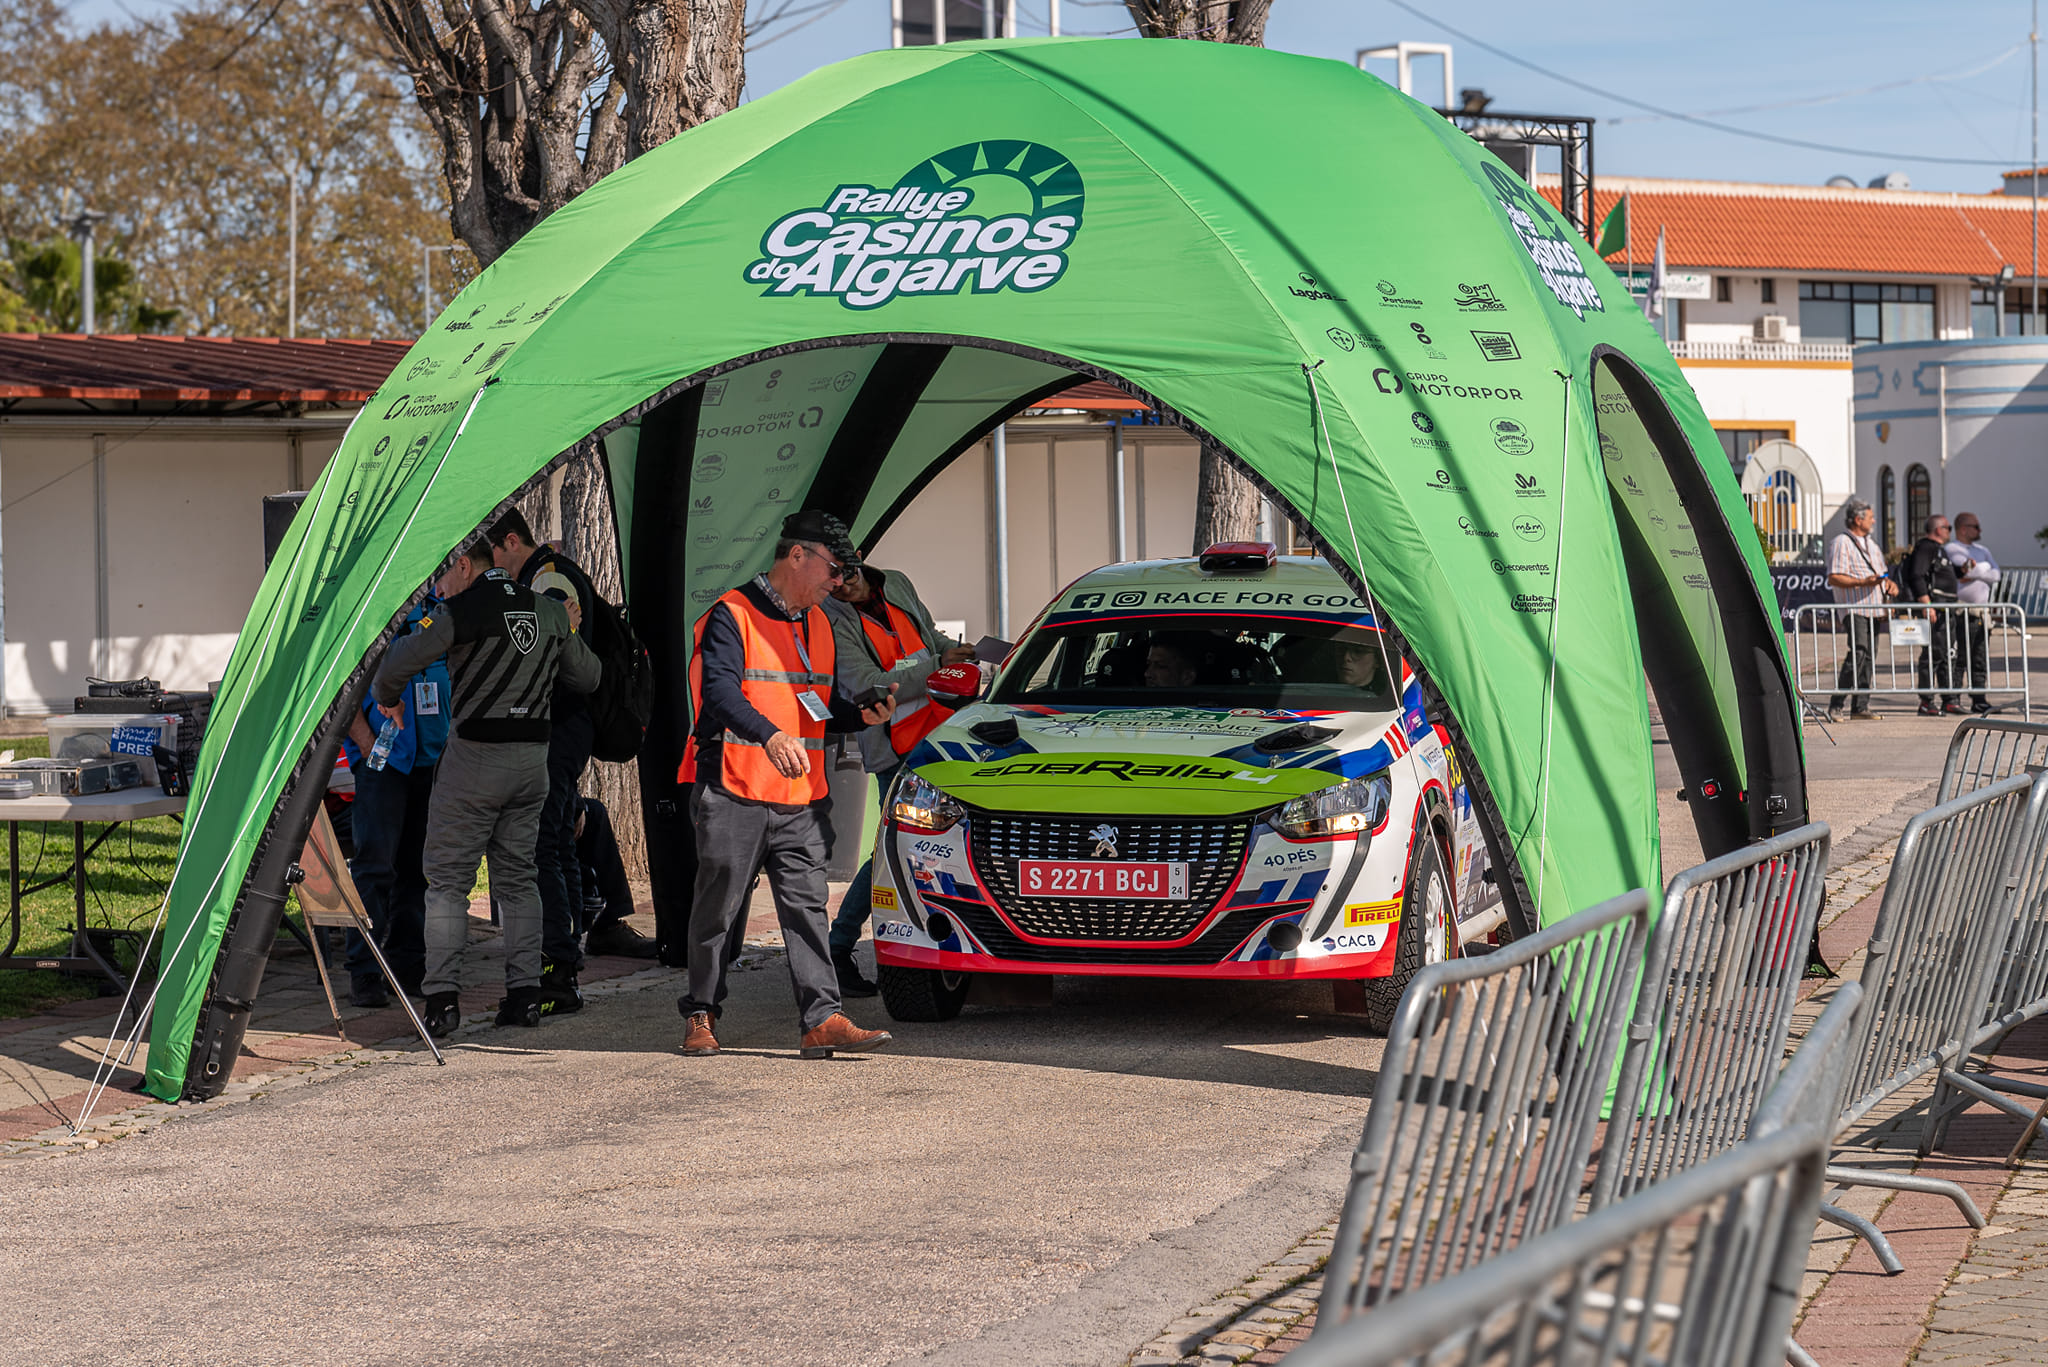 A Motorpor é patrocinadora oficial do Rallye Casinos do Algarve